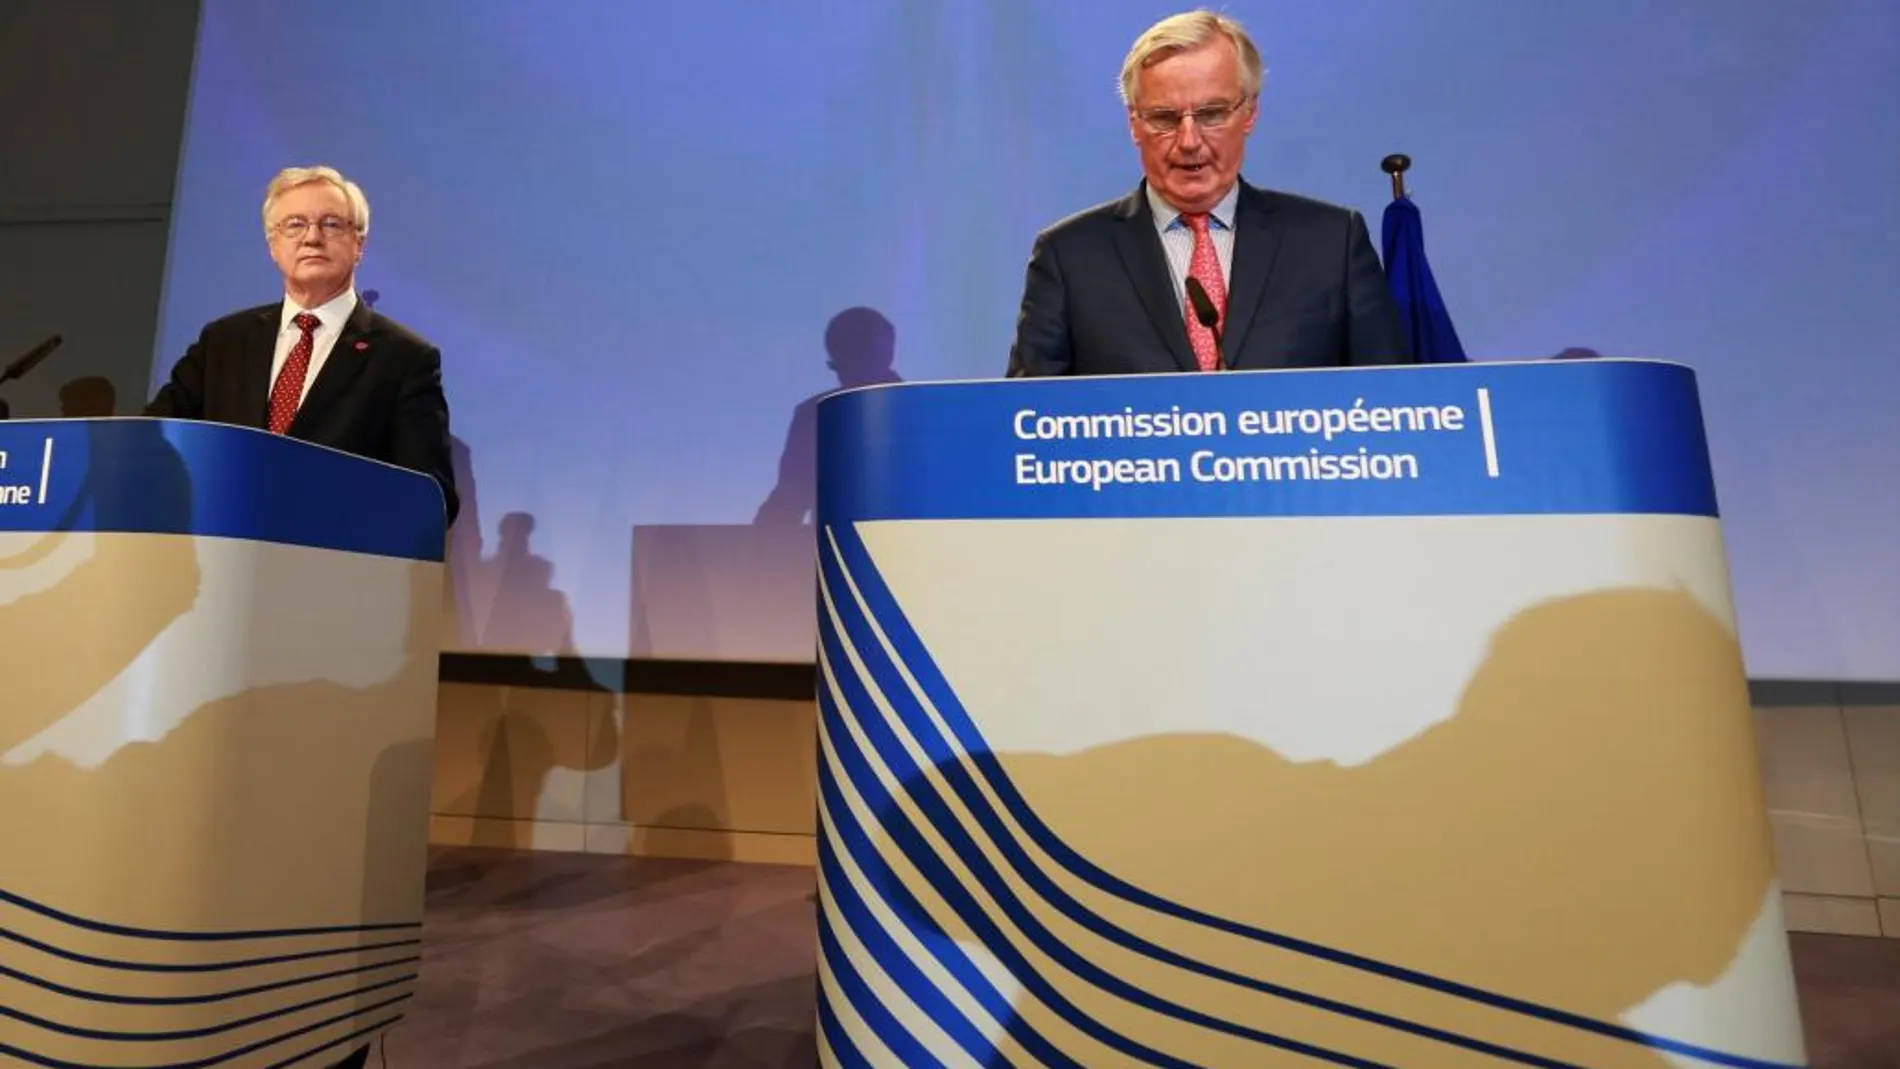 El ministro británico para el "brexit", David Davis (i), y el negociador jefe de la Unión Europea (UE) para el "brexit", Michel Barnier, ofrecen una rueda de prensa en la sede de la Comisión Europea en Bruselas, Bélgica, hoy